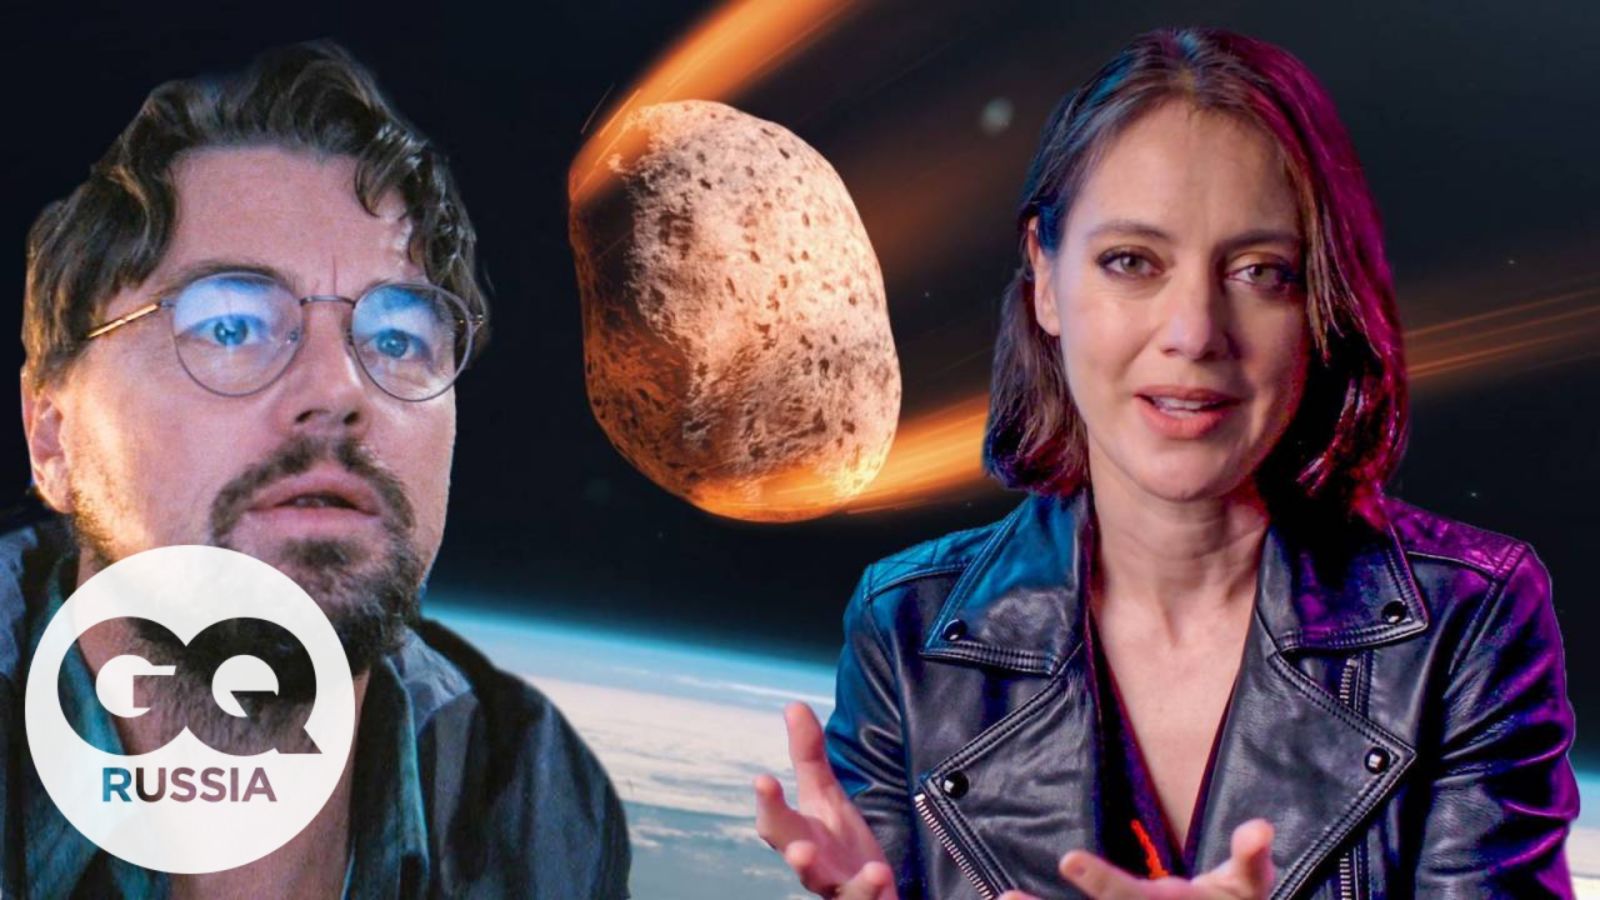 Астроном объясняет сцены с кометой из фильма "Не смотрите наверх" | GQ Россия